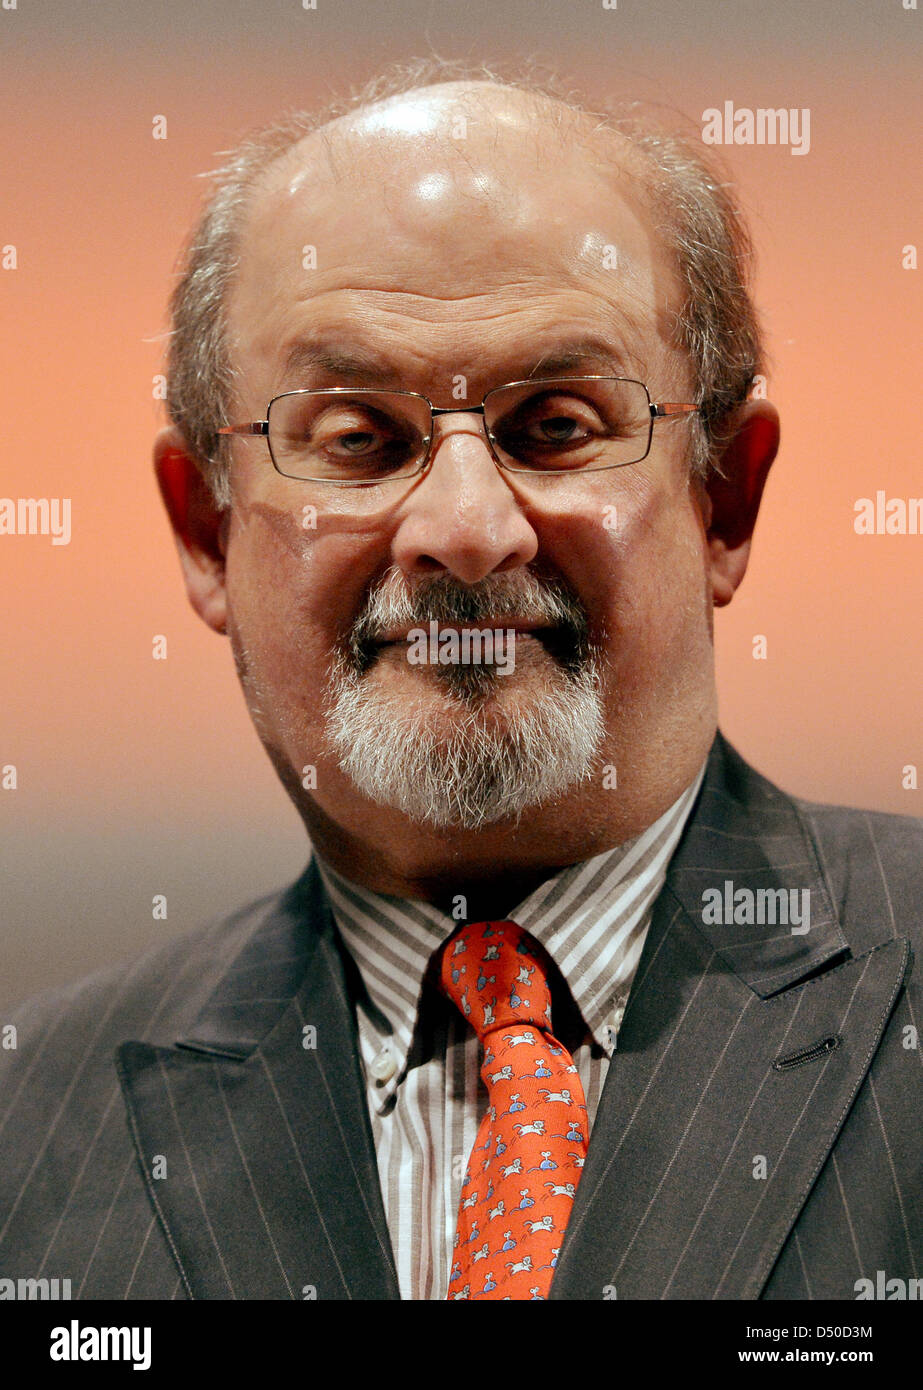 Berlin, Deutschland. 20. März 2013. Indisch-britischen Schriftsteller Sir Salman Rushdie ist während der 7. "Reemtsma Liberty Awards" in Berlin, Deutschland, 20. März 2013 abgebildet. Foto: Britta Pedersen/Dpa/Alamy Live News Stockfoto